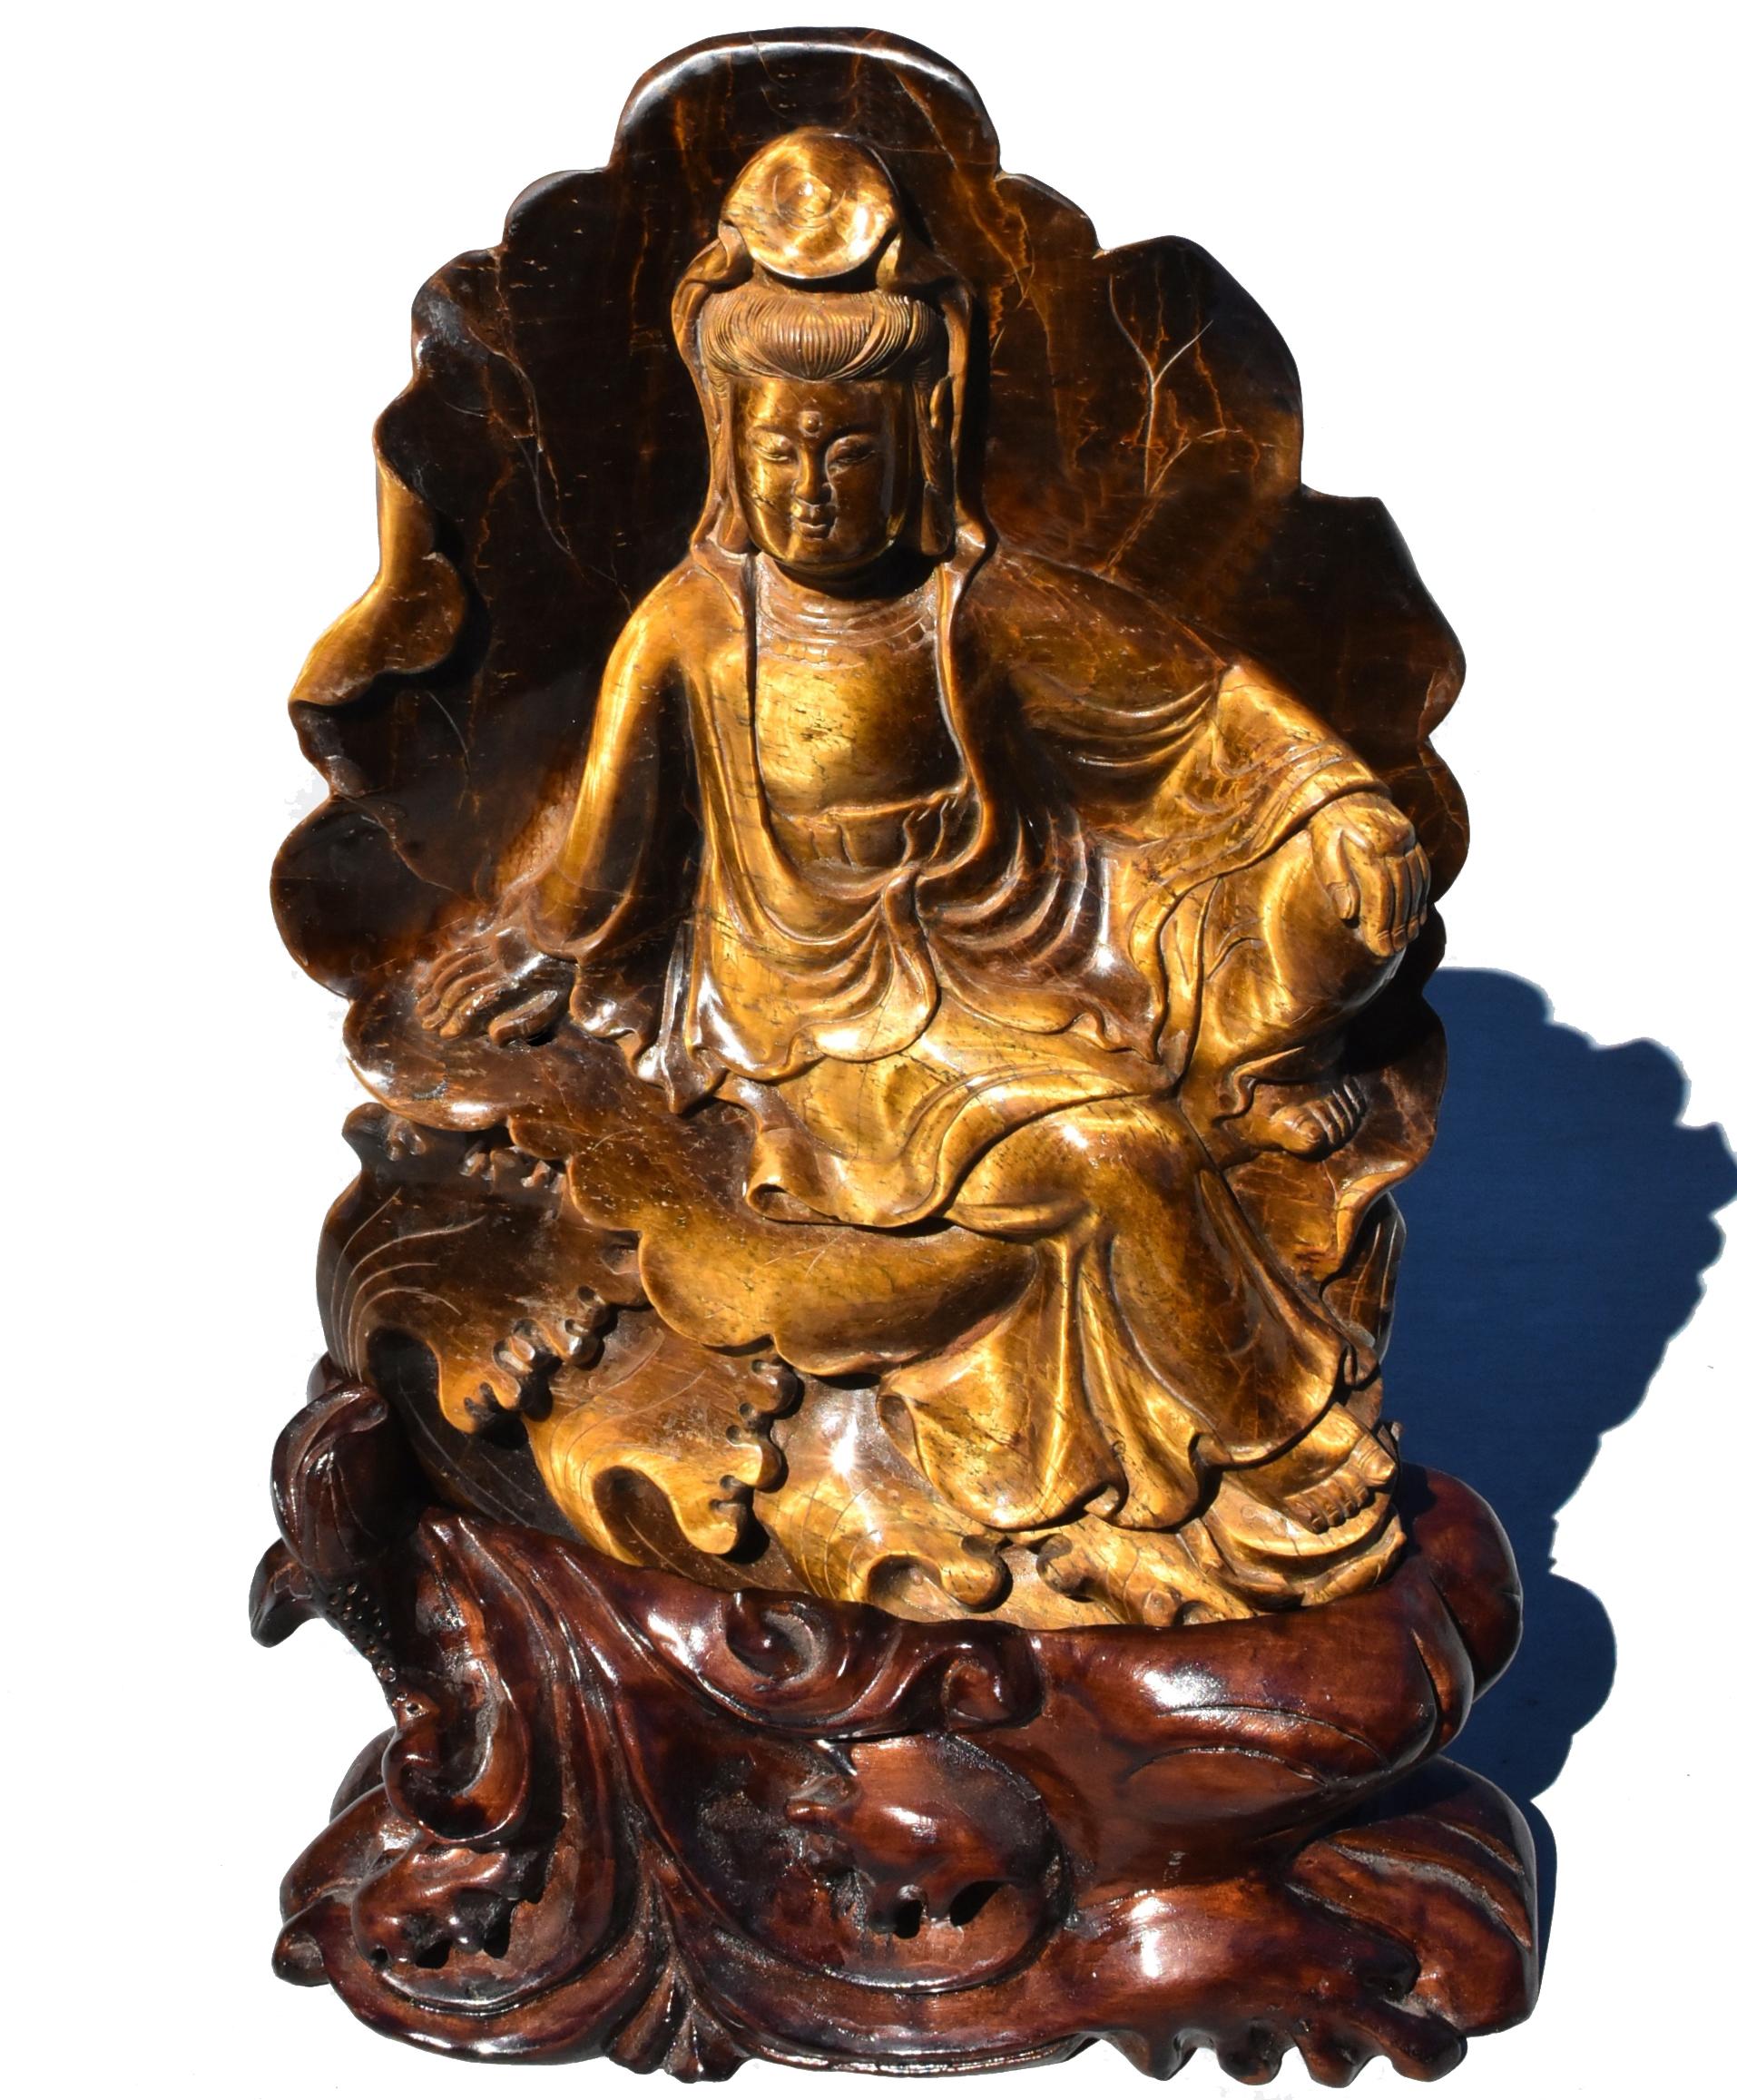 Une magnifique sculpture naturelle en œil de tigre représentant le bodhisattva compatissant Lune d'eau Guan Yin, Avalokiteshvara. Soutenu par une feuille de lotus et surmonté de vagues d'eau, Avalokiteshvara est représenté assis en rajalilasana, la